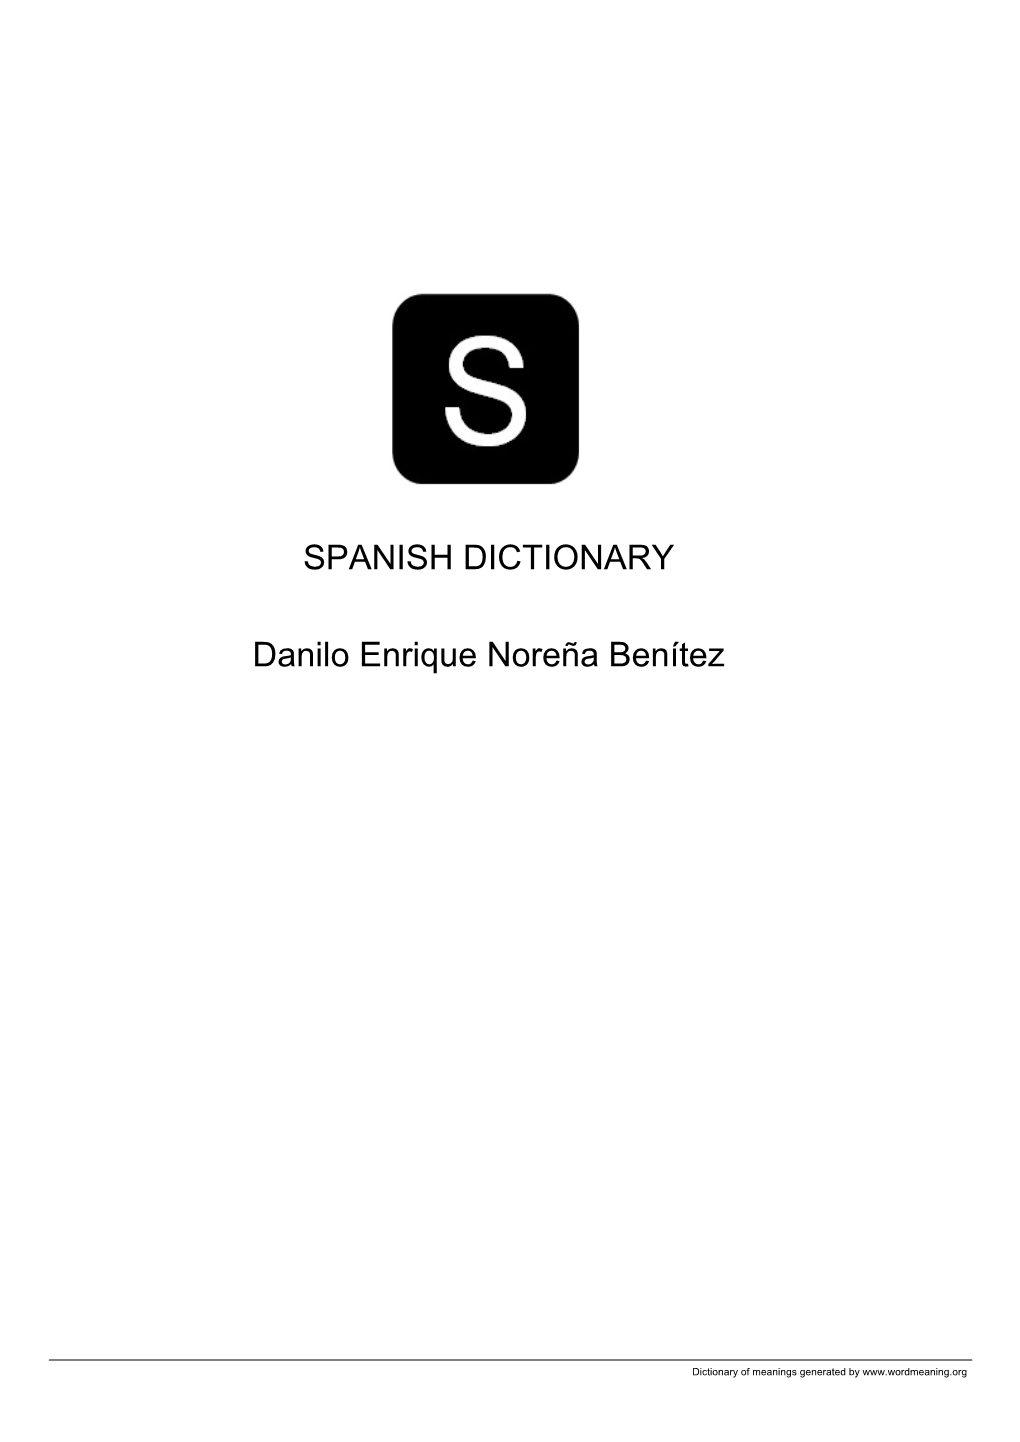 Spanish Open Dictionary by Danilo Enrique Noreña Benítez VOL12